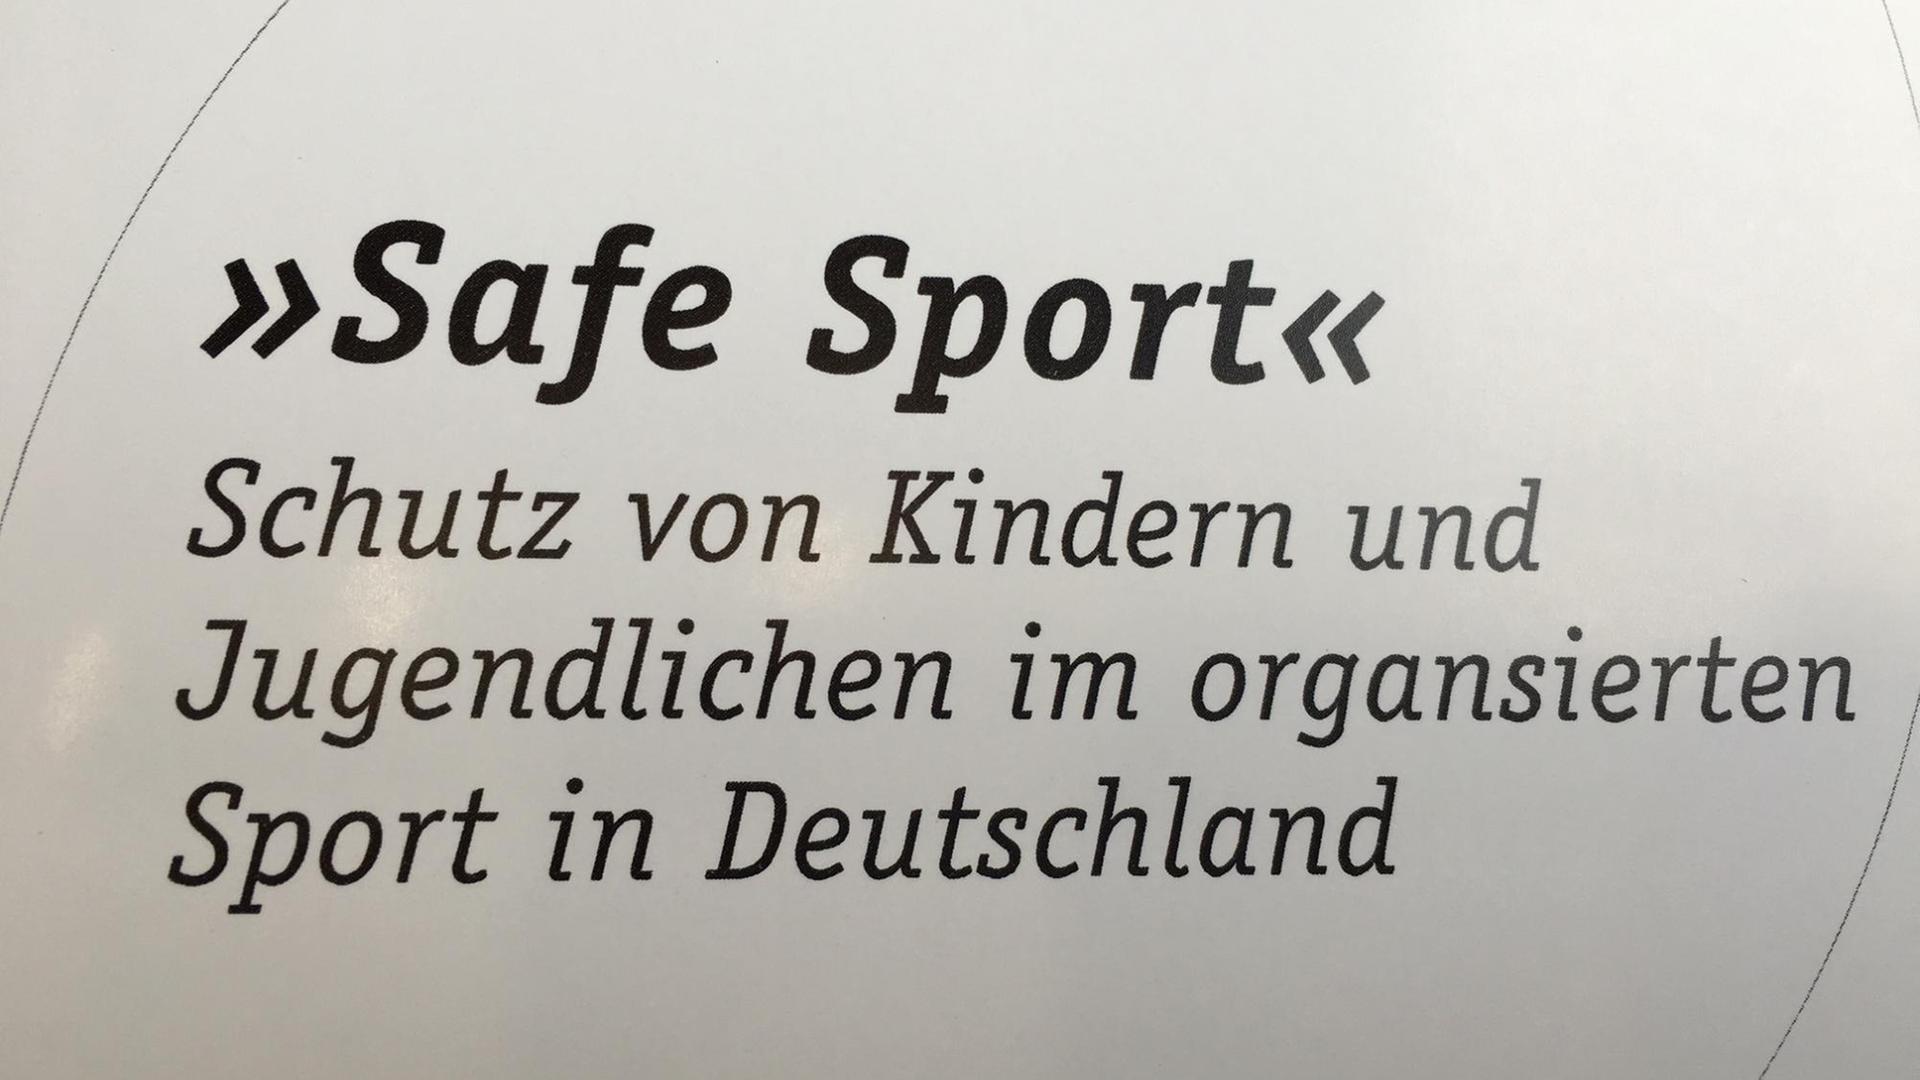 Ein weißes Schild mit der Aufschrift "Safe Sport" - Schutz von Kindern und Jugendlichen im organisierten Sport in Deutschland